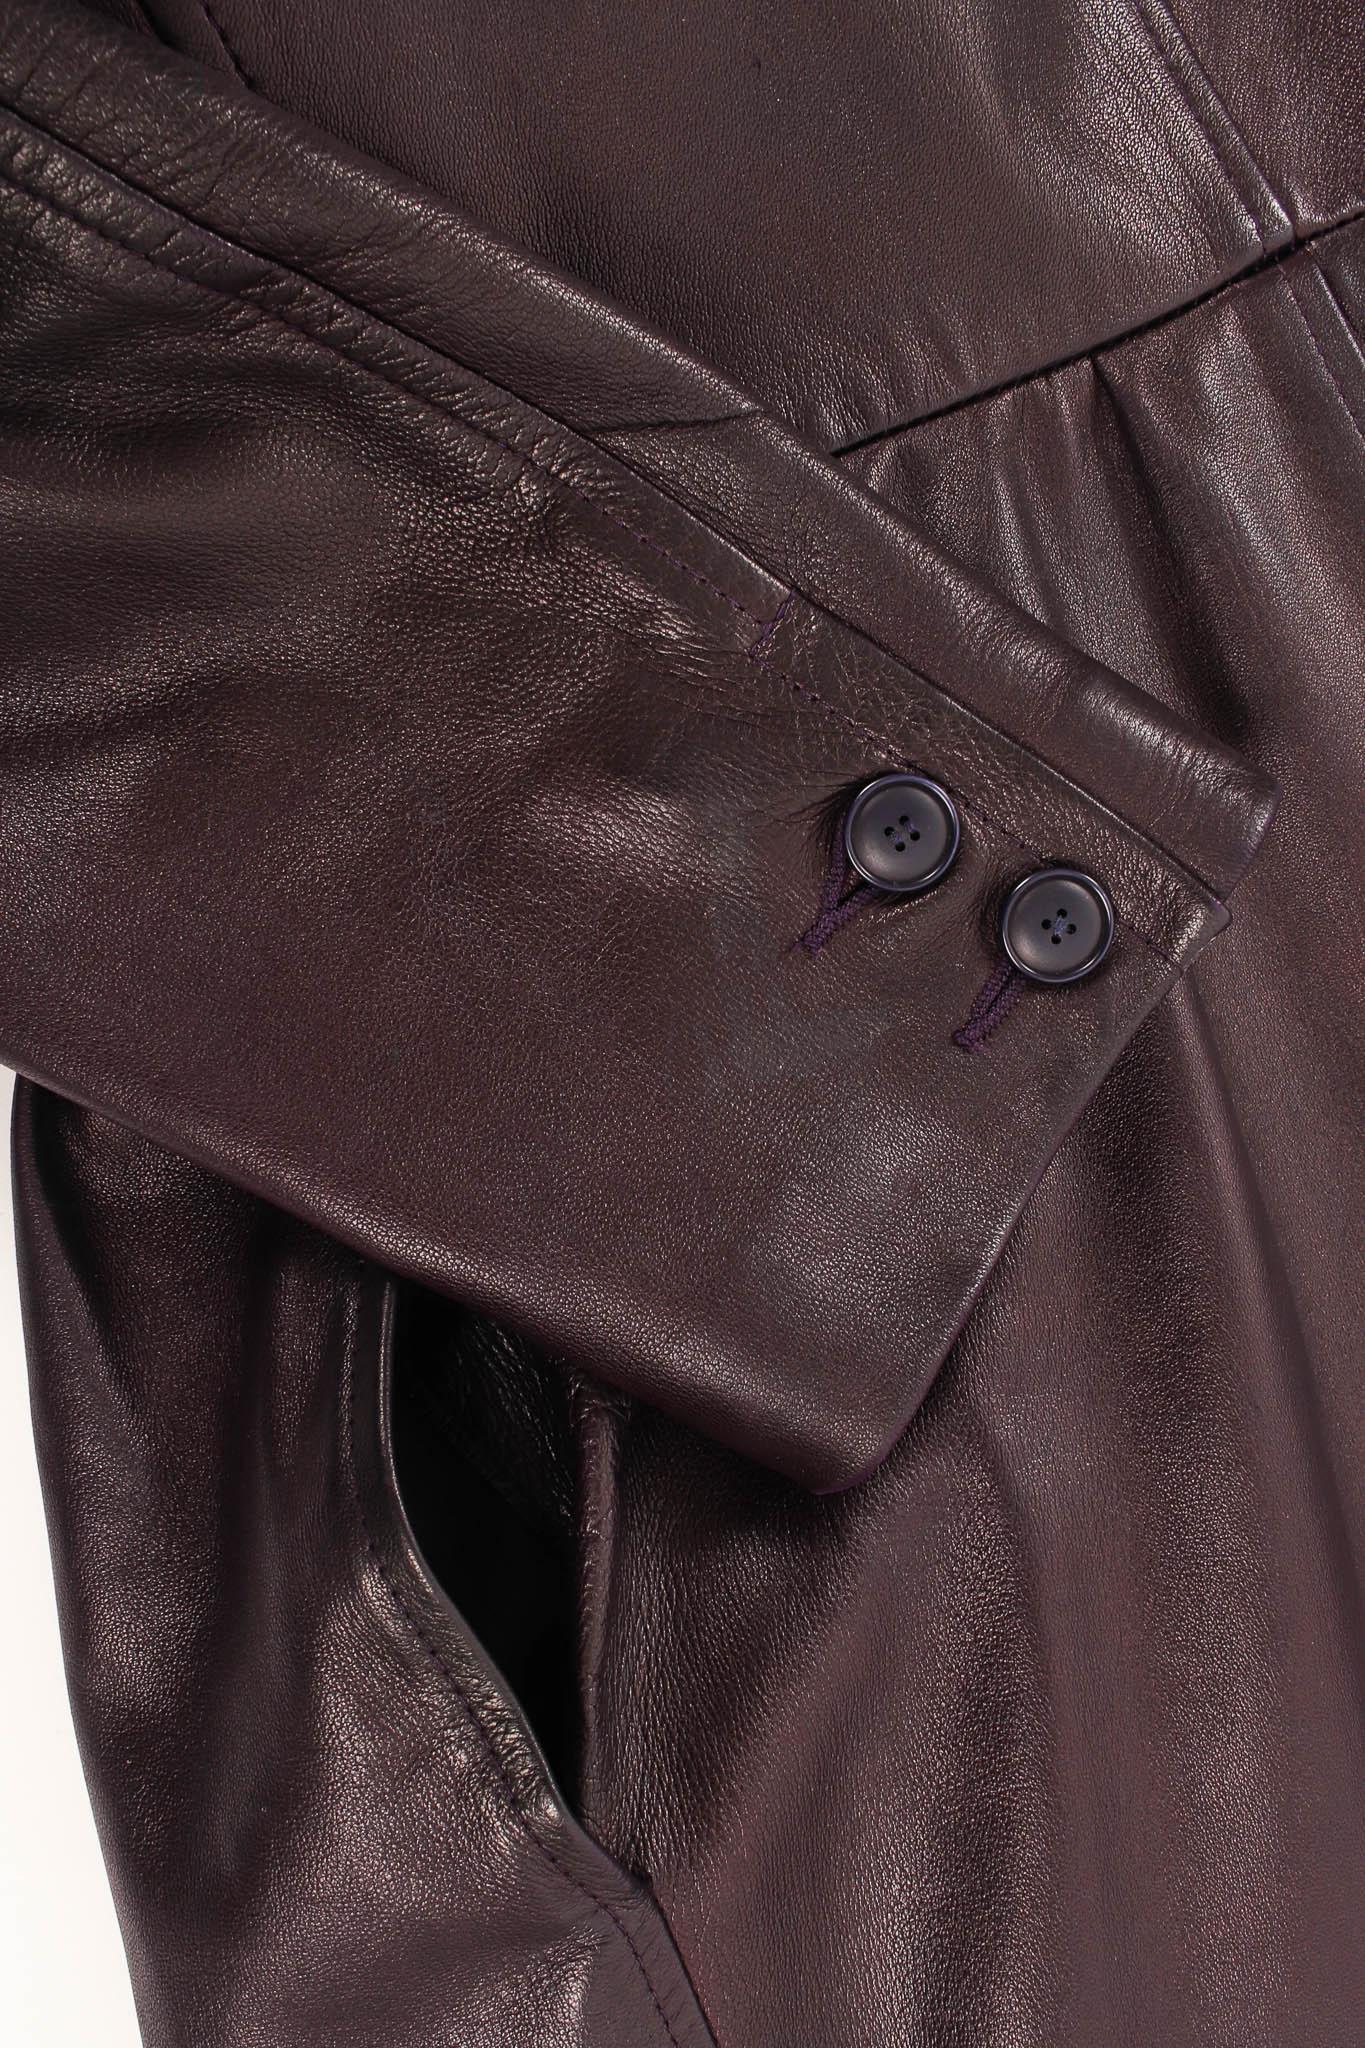 Vintage Saint Laurent 1980s Leather Dress Jacket light sleeve discoloration @ Recess Los Angeles